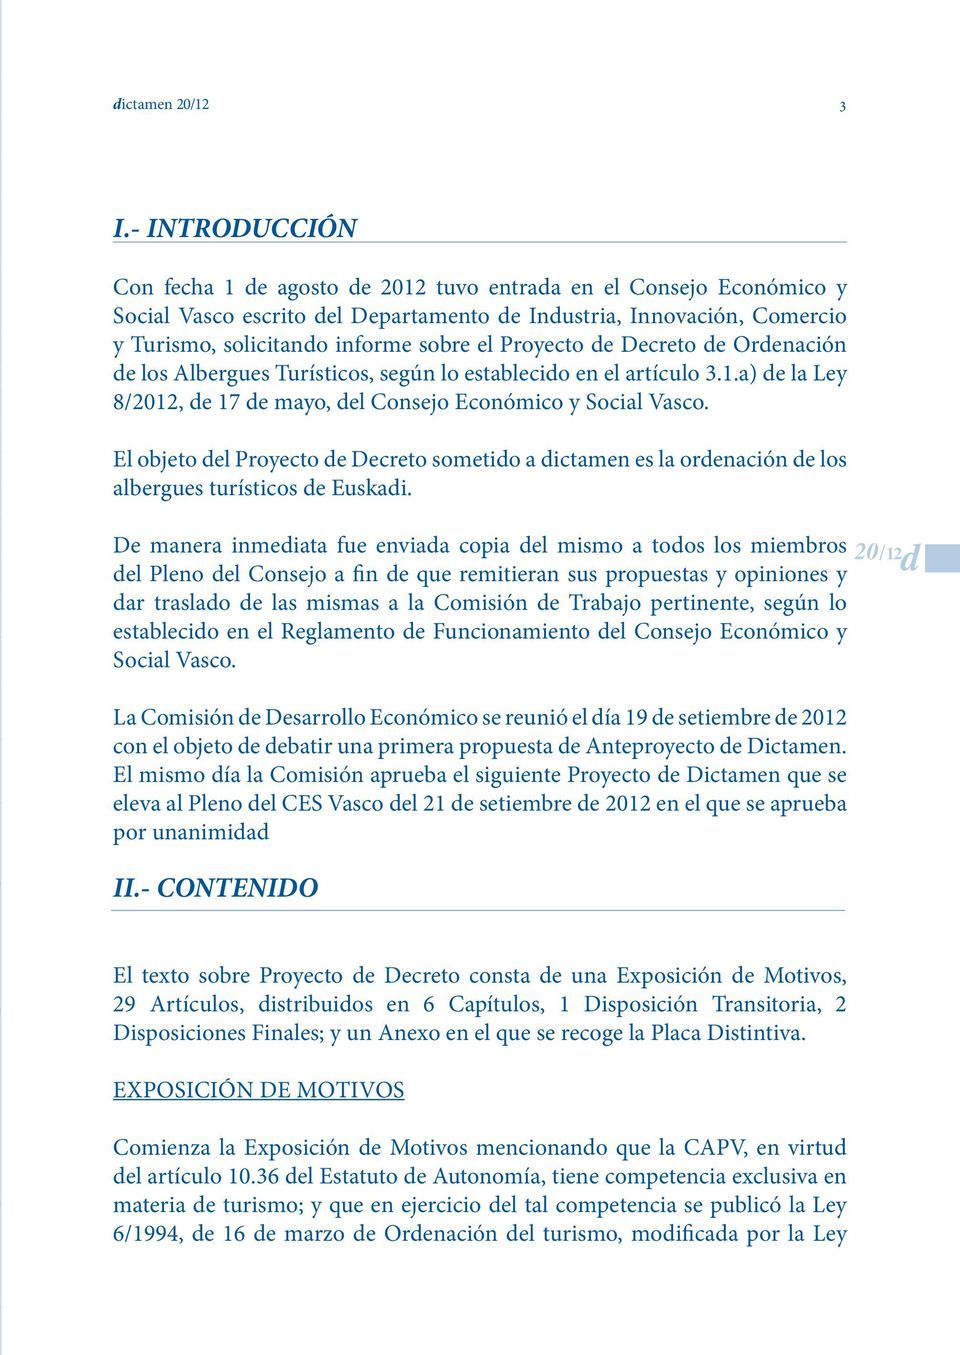 Proyecto de Decreto de Ordenación de los Albergues Turísticos, según lo establecido en el artículo 3.1.a) de la Ley 8/2012, de 17 de mayo, del Consejo Económico y Social Vasco.